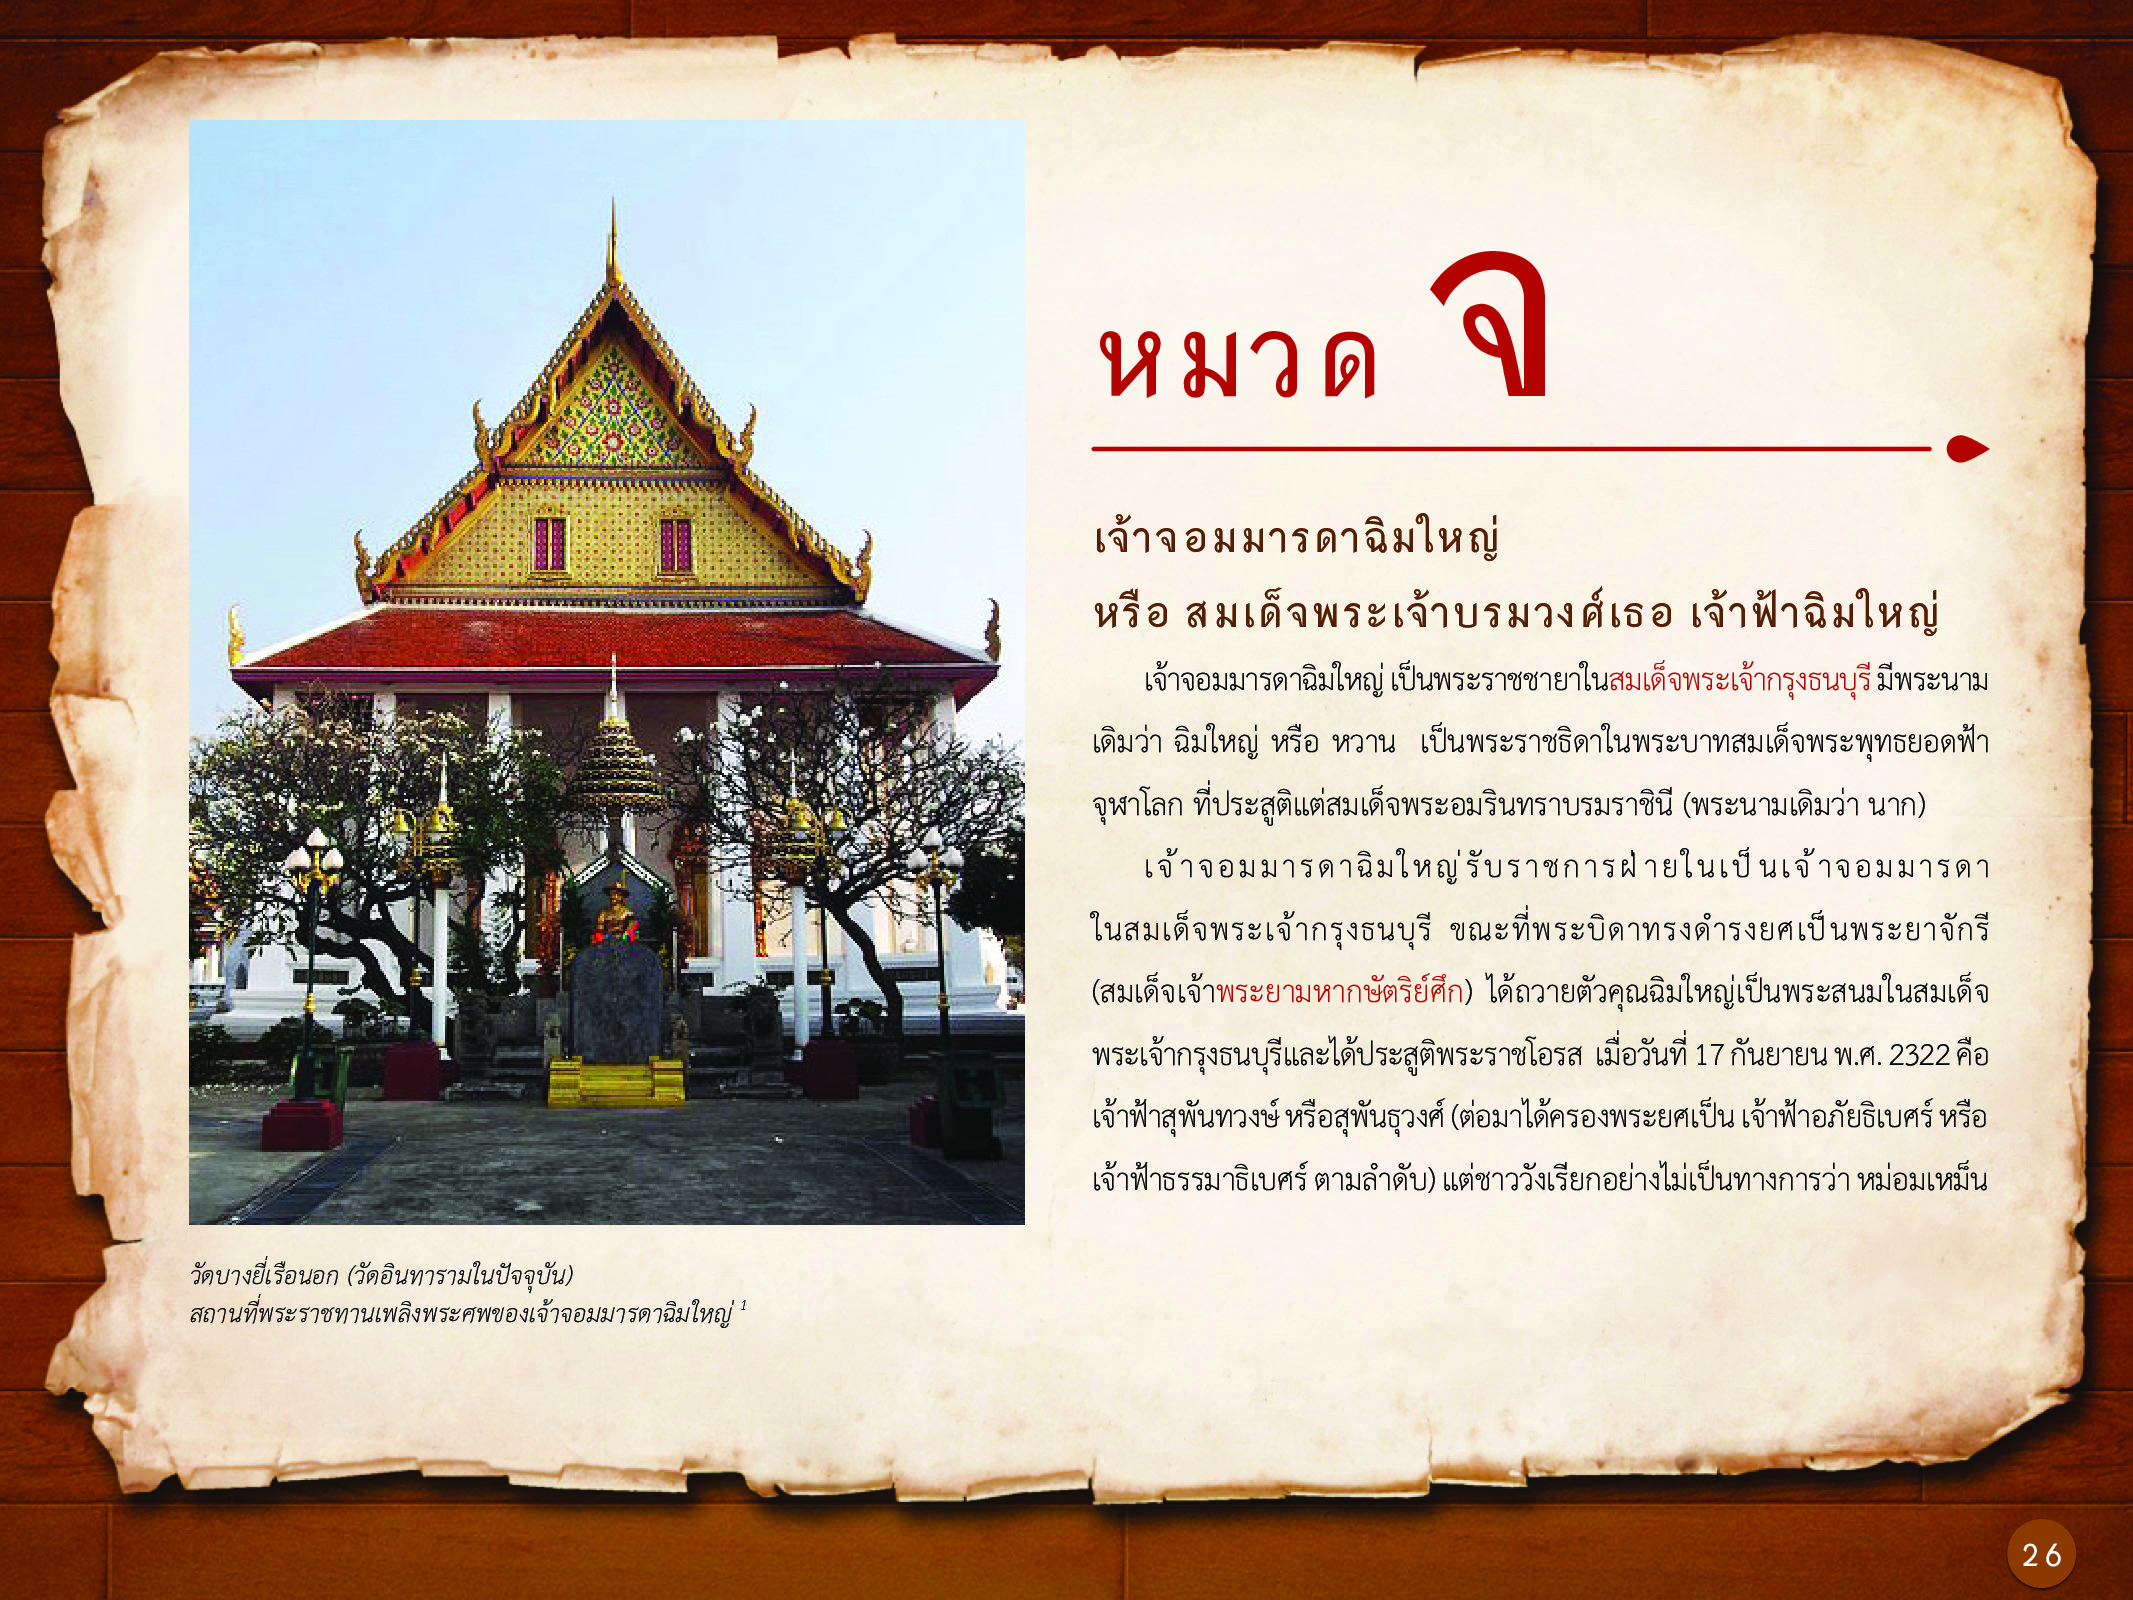 ประวัติศาสตร์กรุงธนบุรี ./images/history_dhonburi/26.jpg